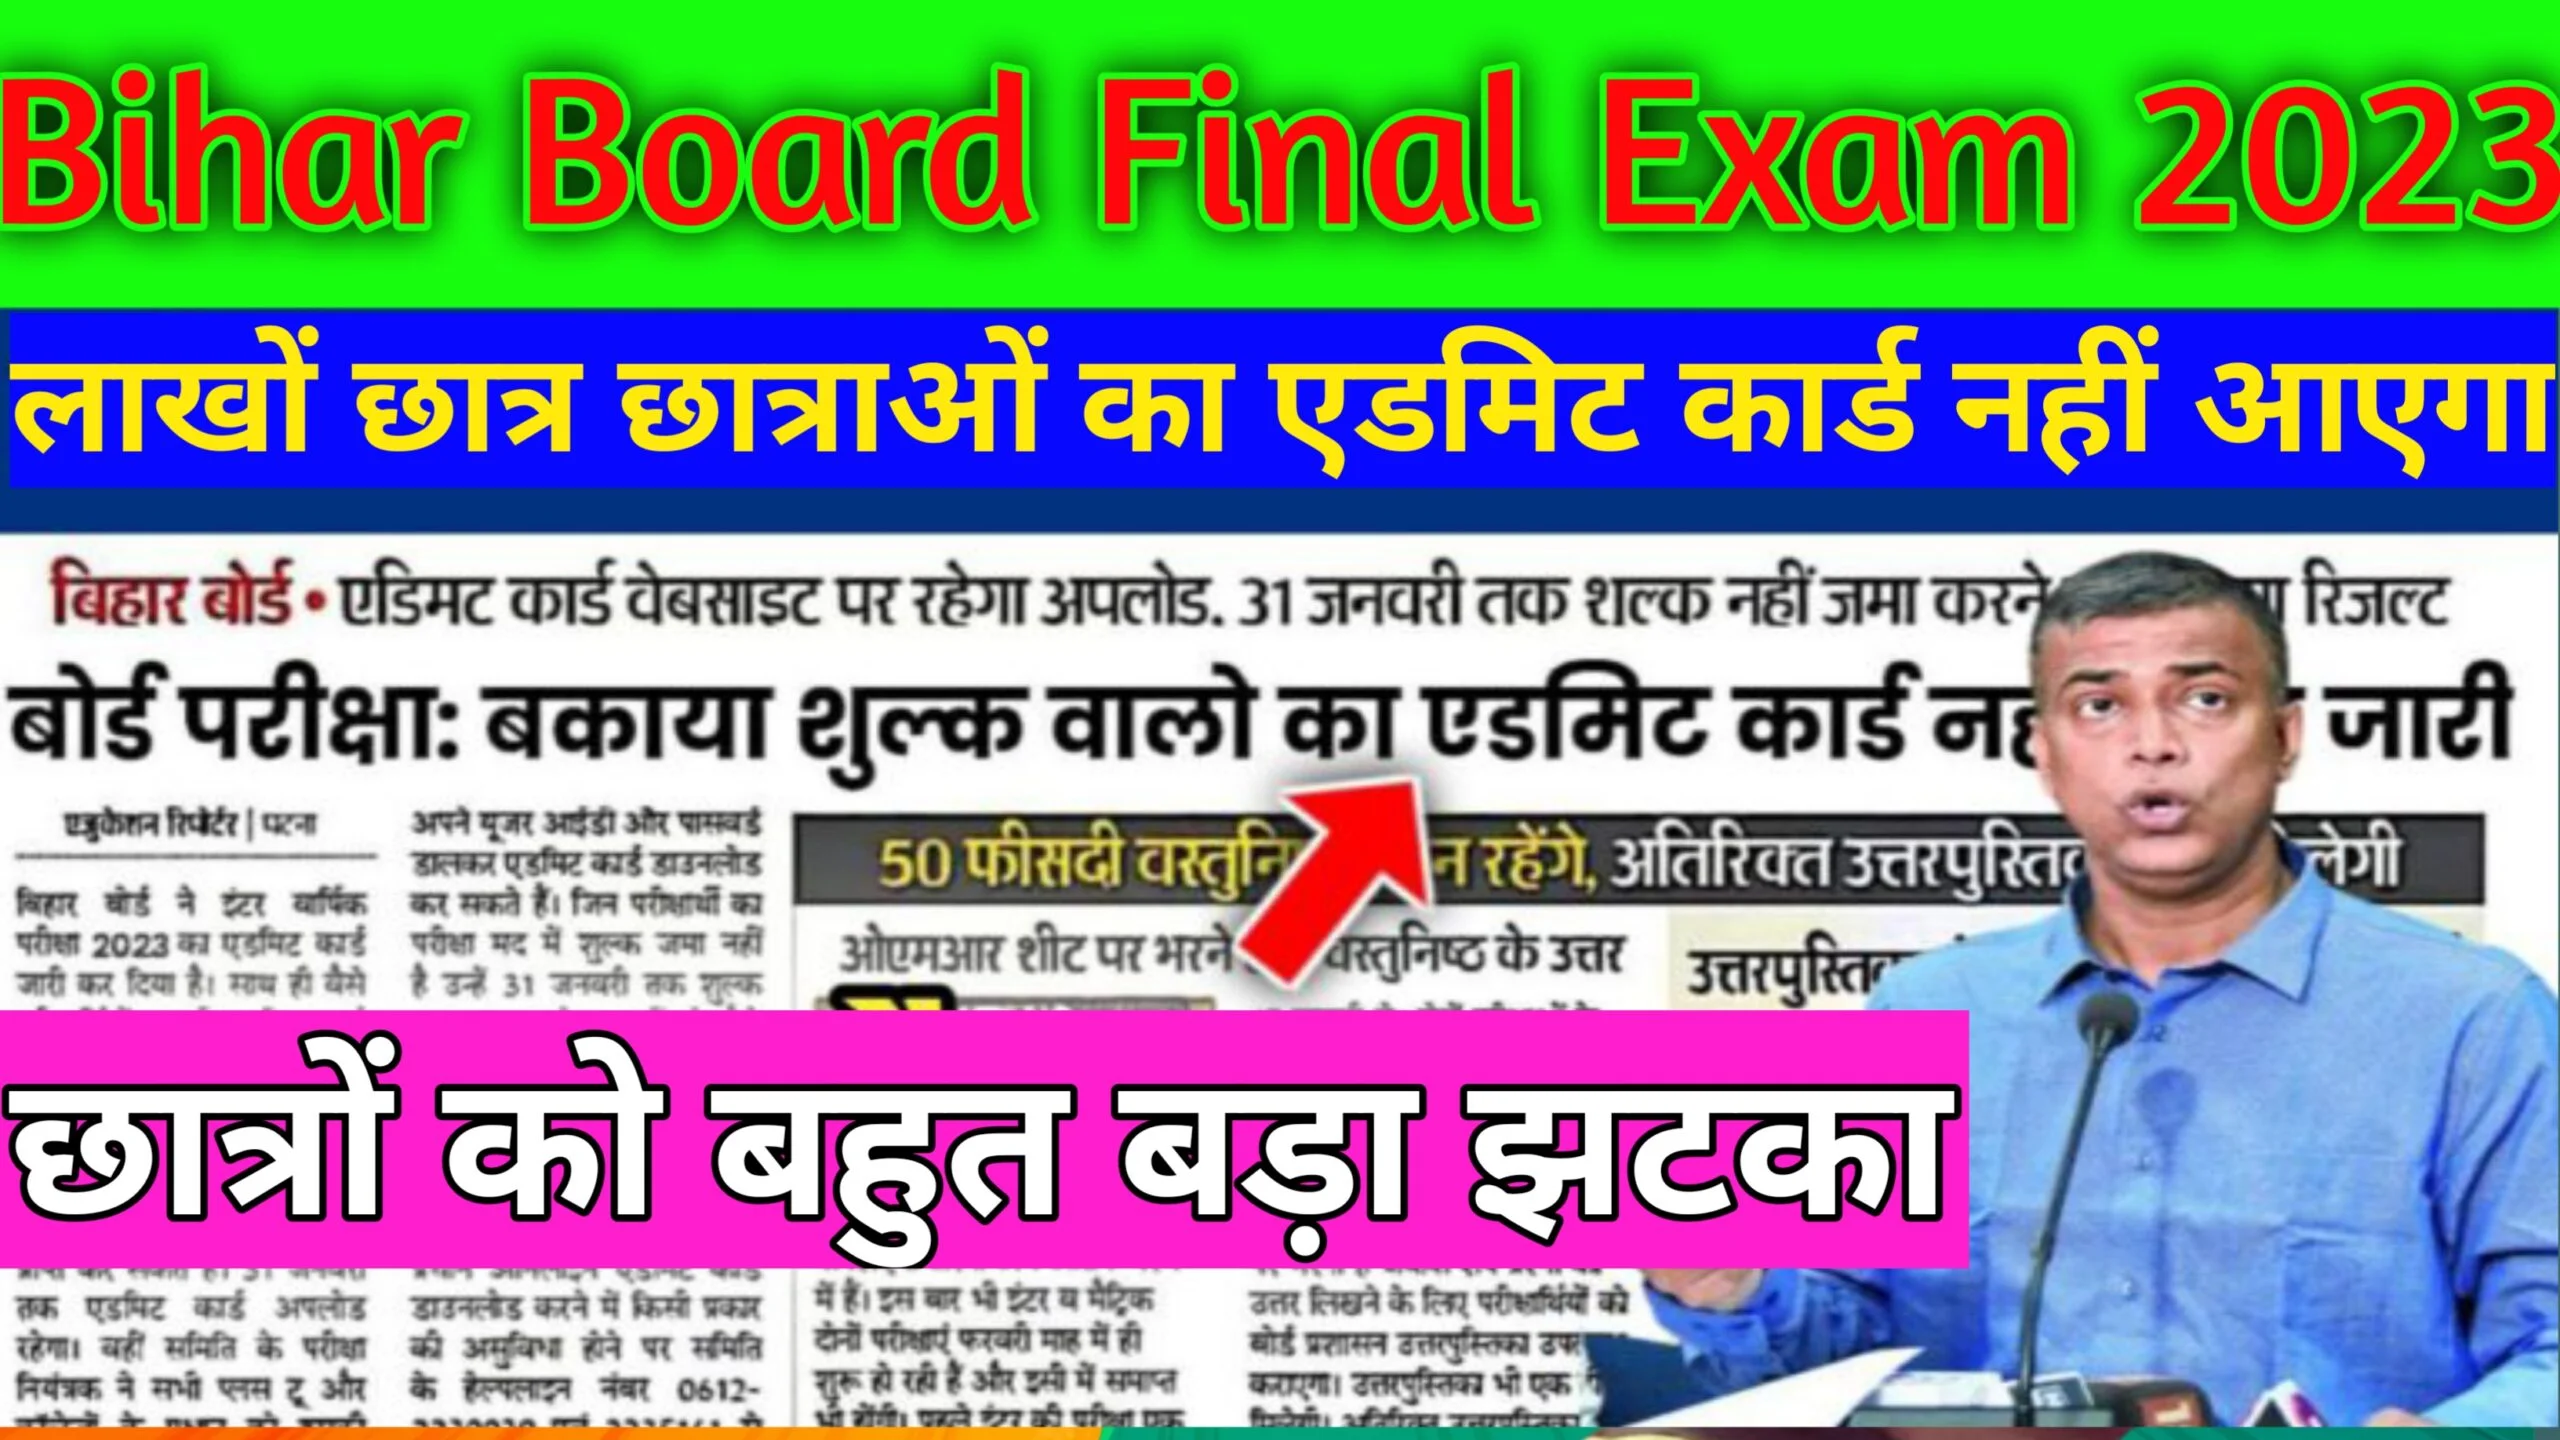 बिहार बोर्ड एग्जाम 2023 फाइनल परीक्षा का ओरिजिनल एडमिट कार्ड में बरी हुई गड़बड़ी यहां से आप लोग जाने Bihar Board Final Exam 2023 Admit Card